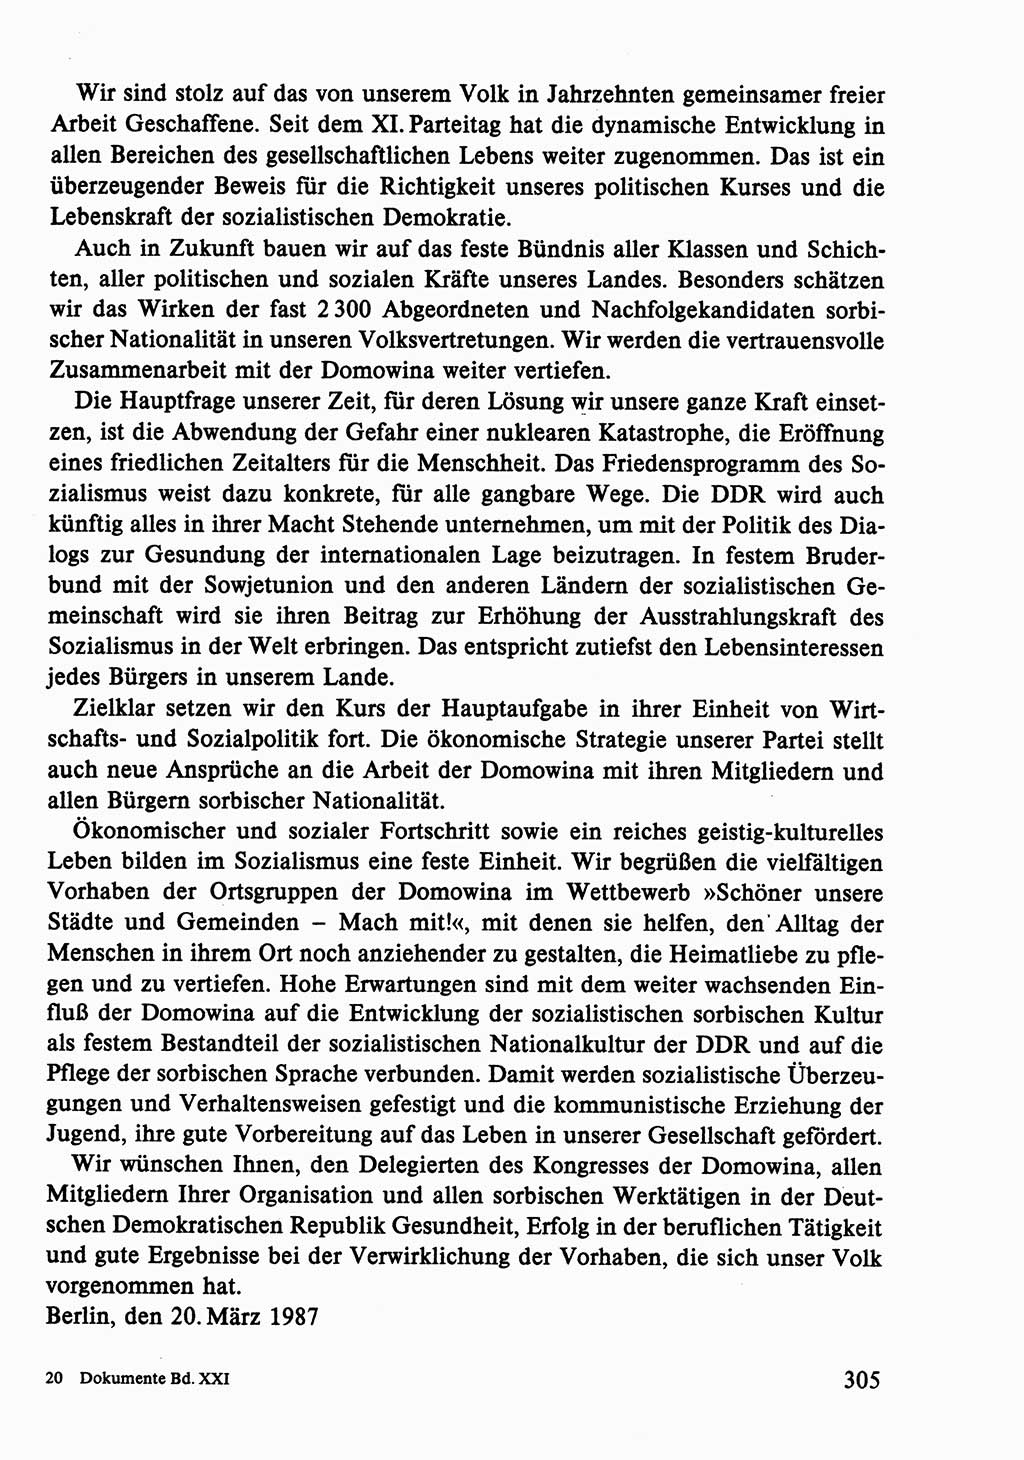 Dokumente der Sozialistischen Einheitspartei Deutschlands (SED) [Deutsche Demokratische Republik (DDR)] 1986-1987, Seite 305 (Dok. SED DDR 1986-1987, S. 305)